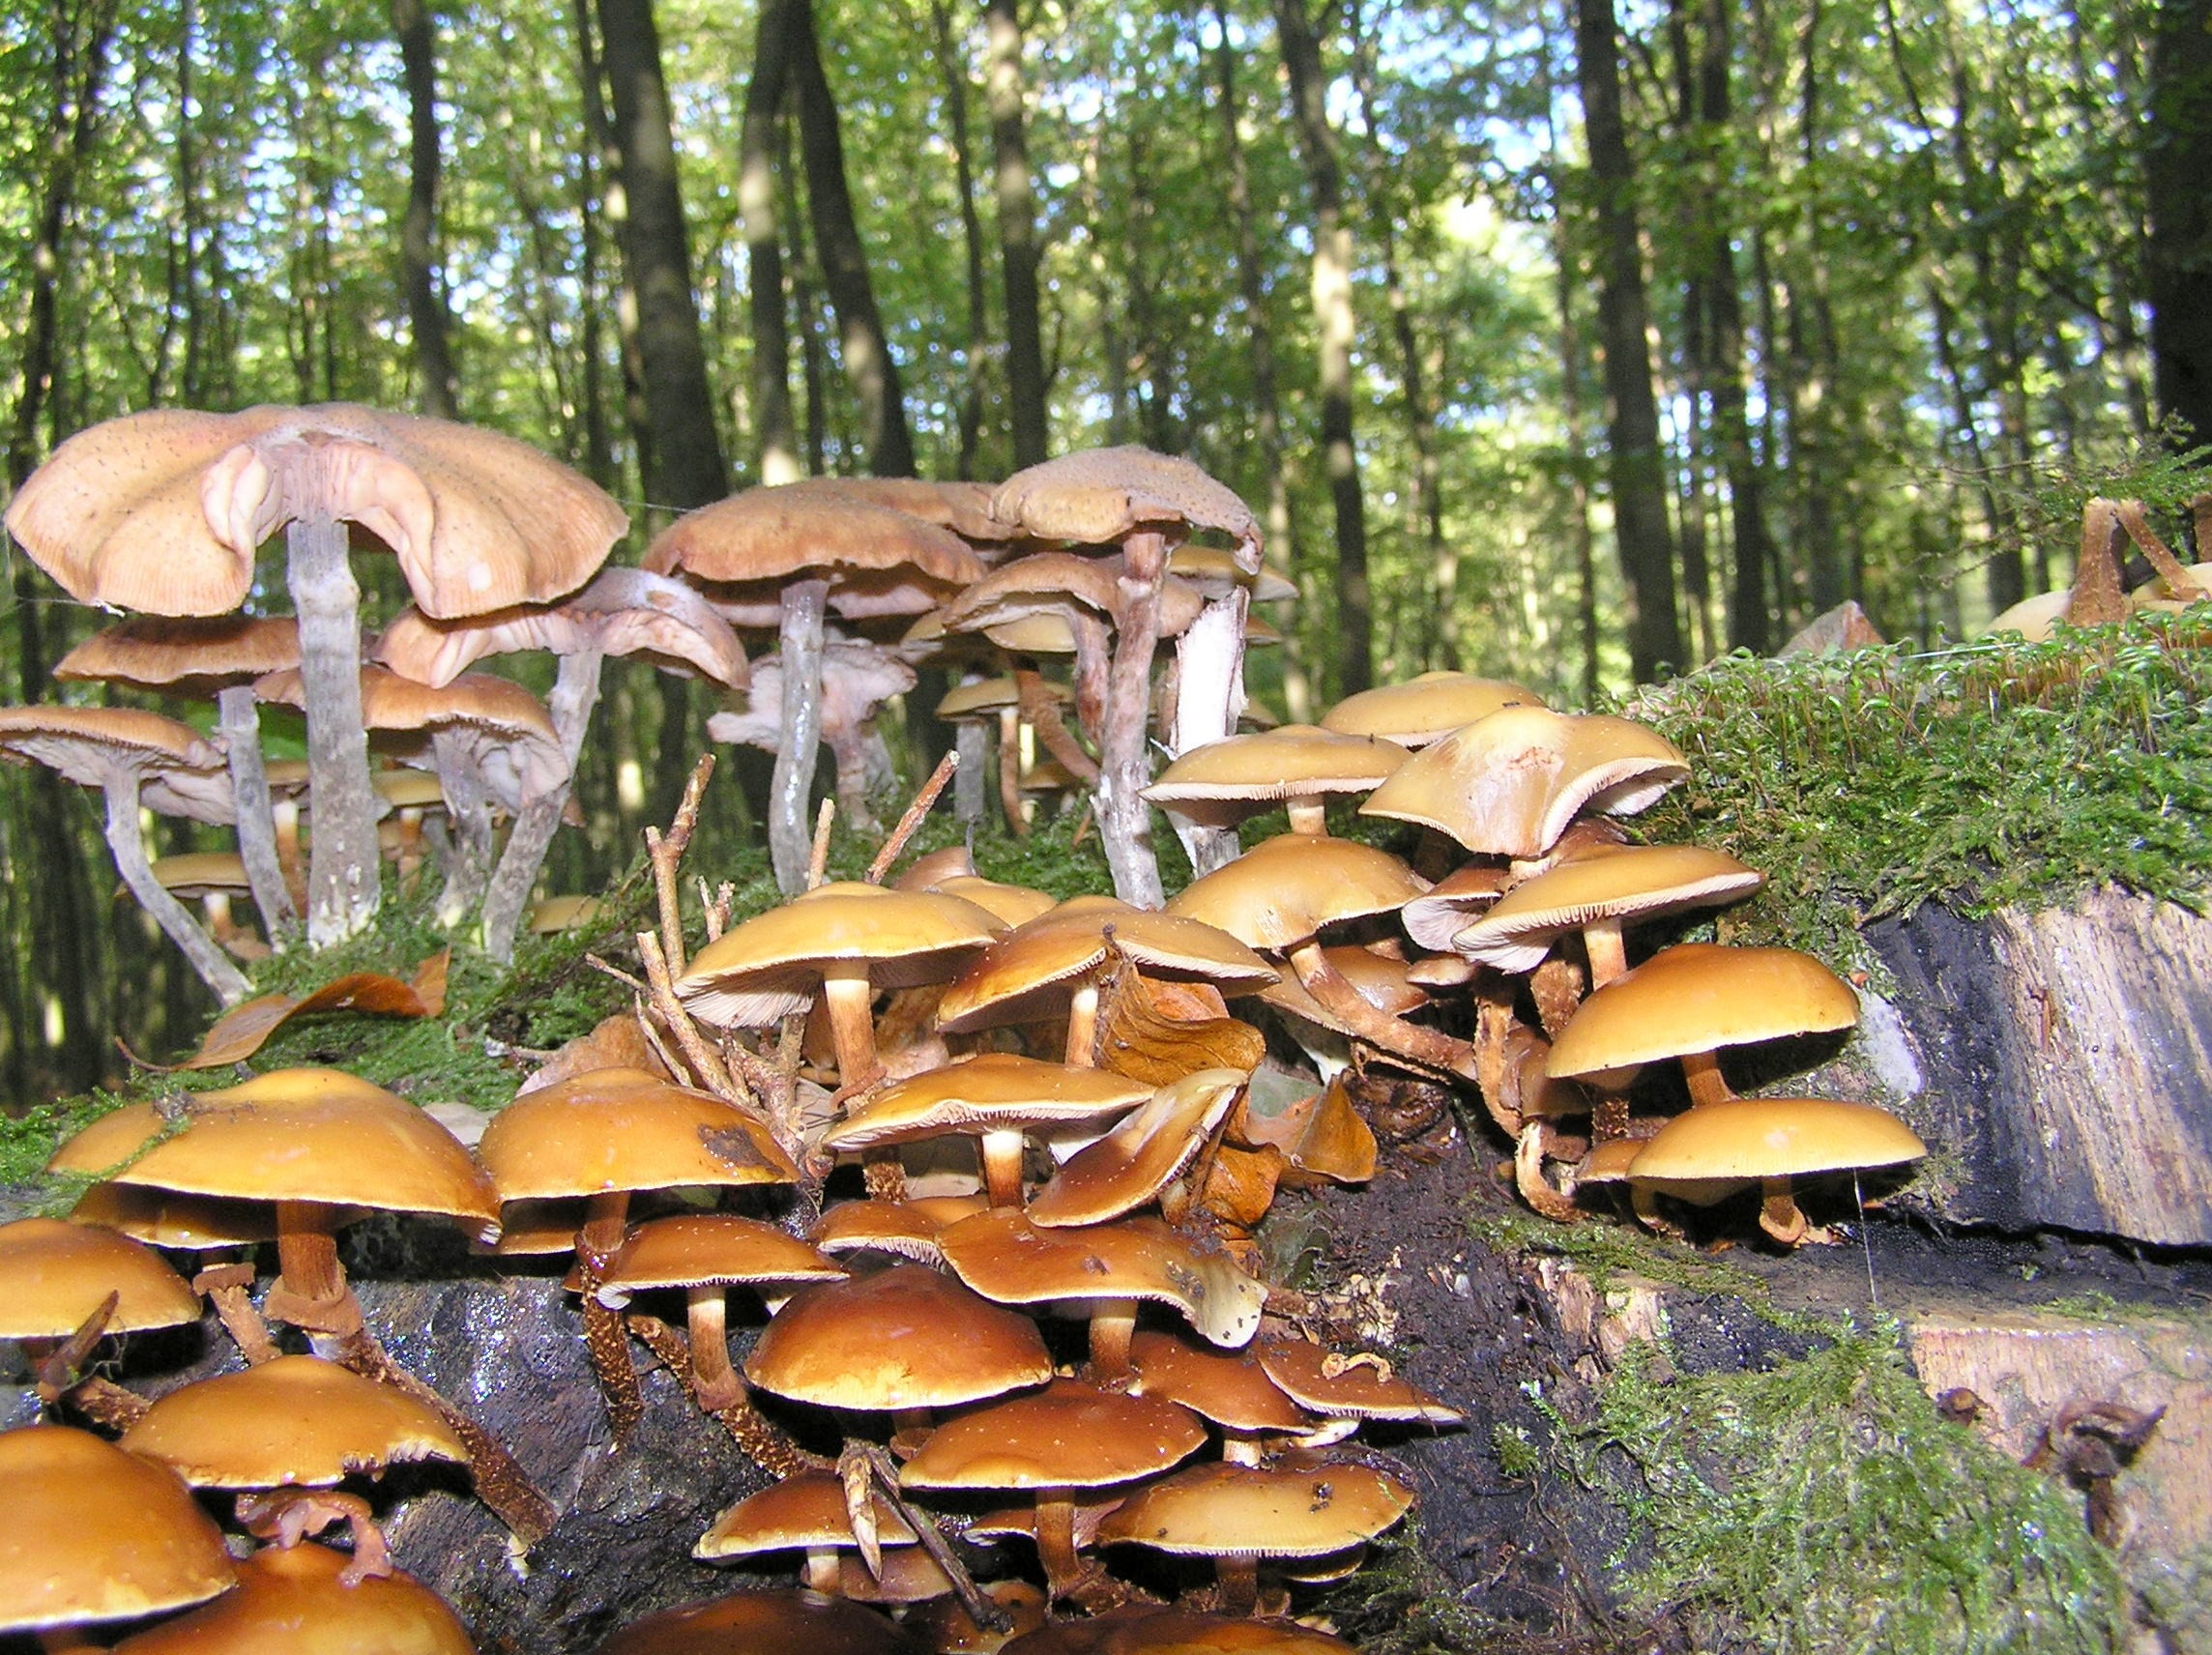 съедобные серые грибы в сосновом лесу фото